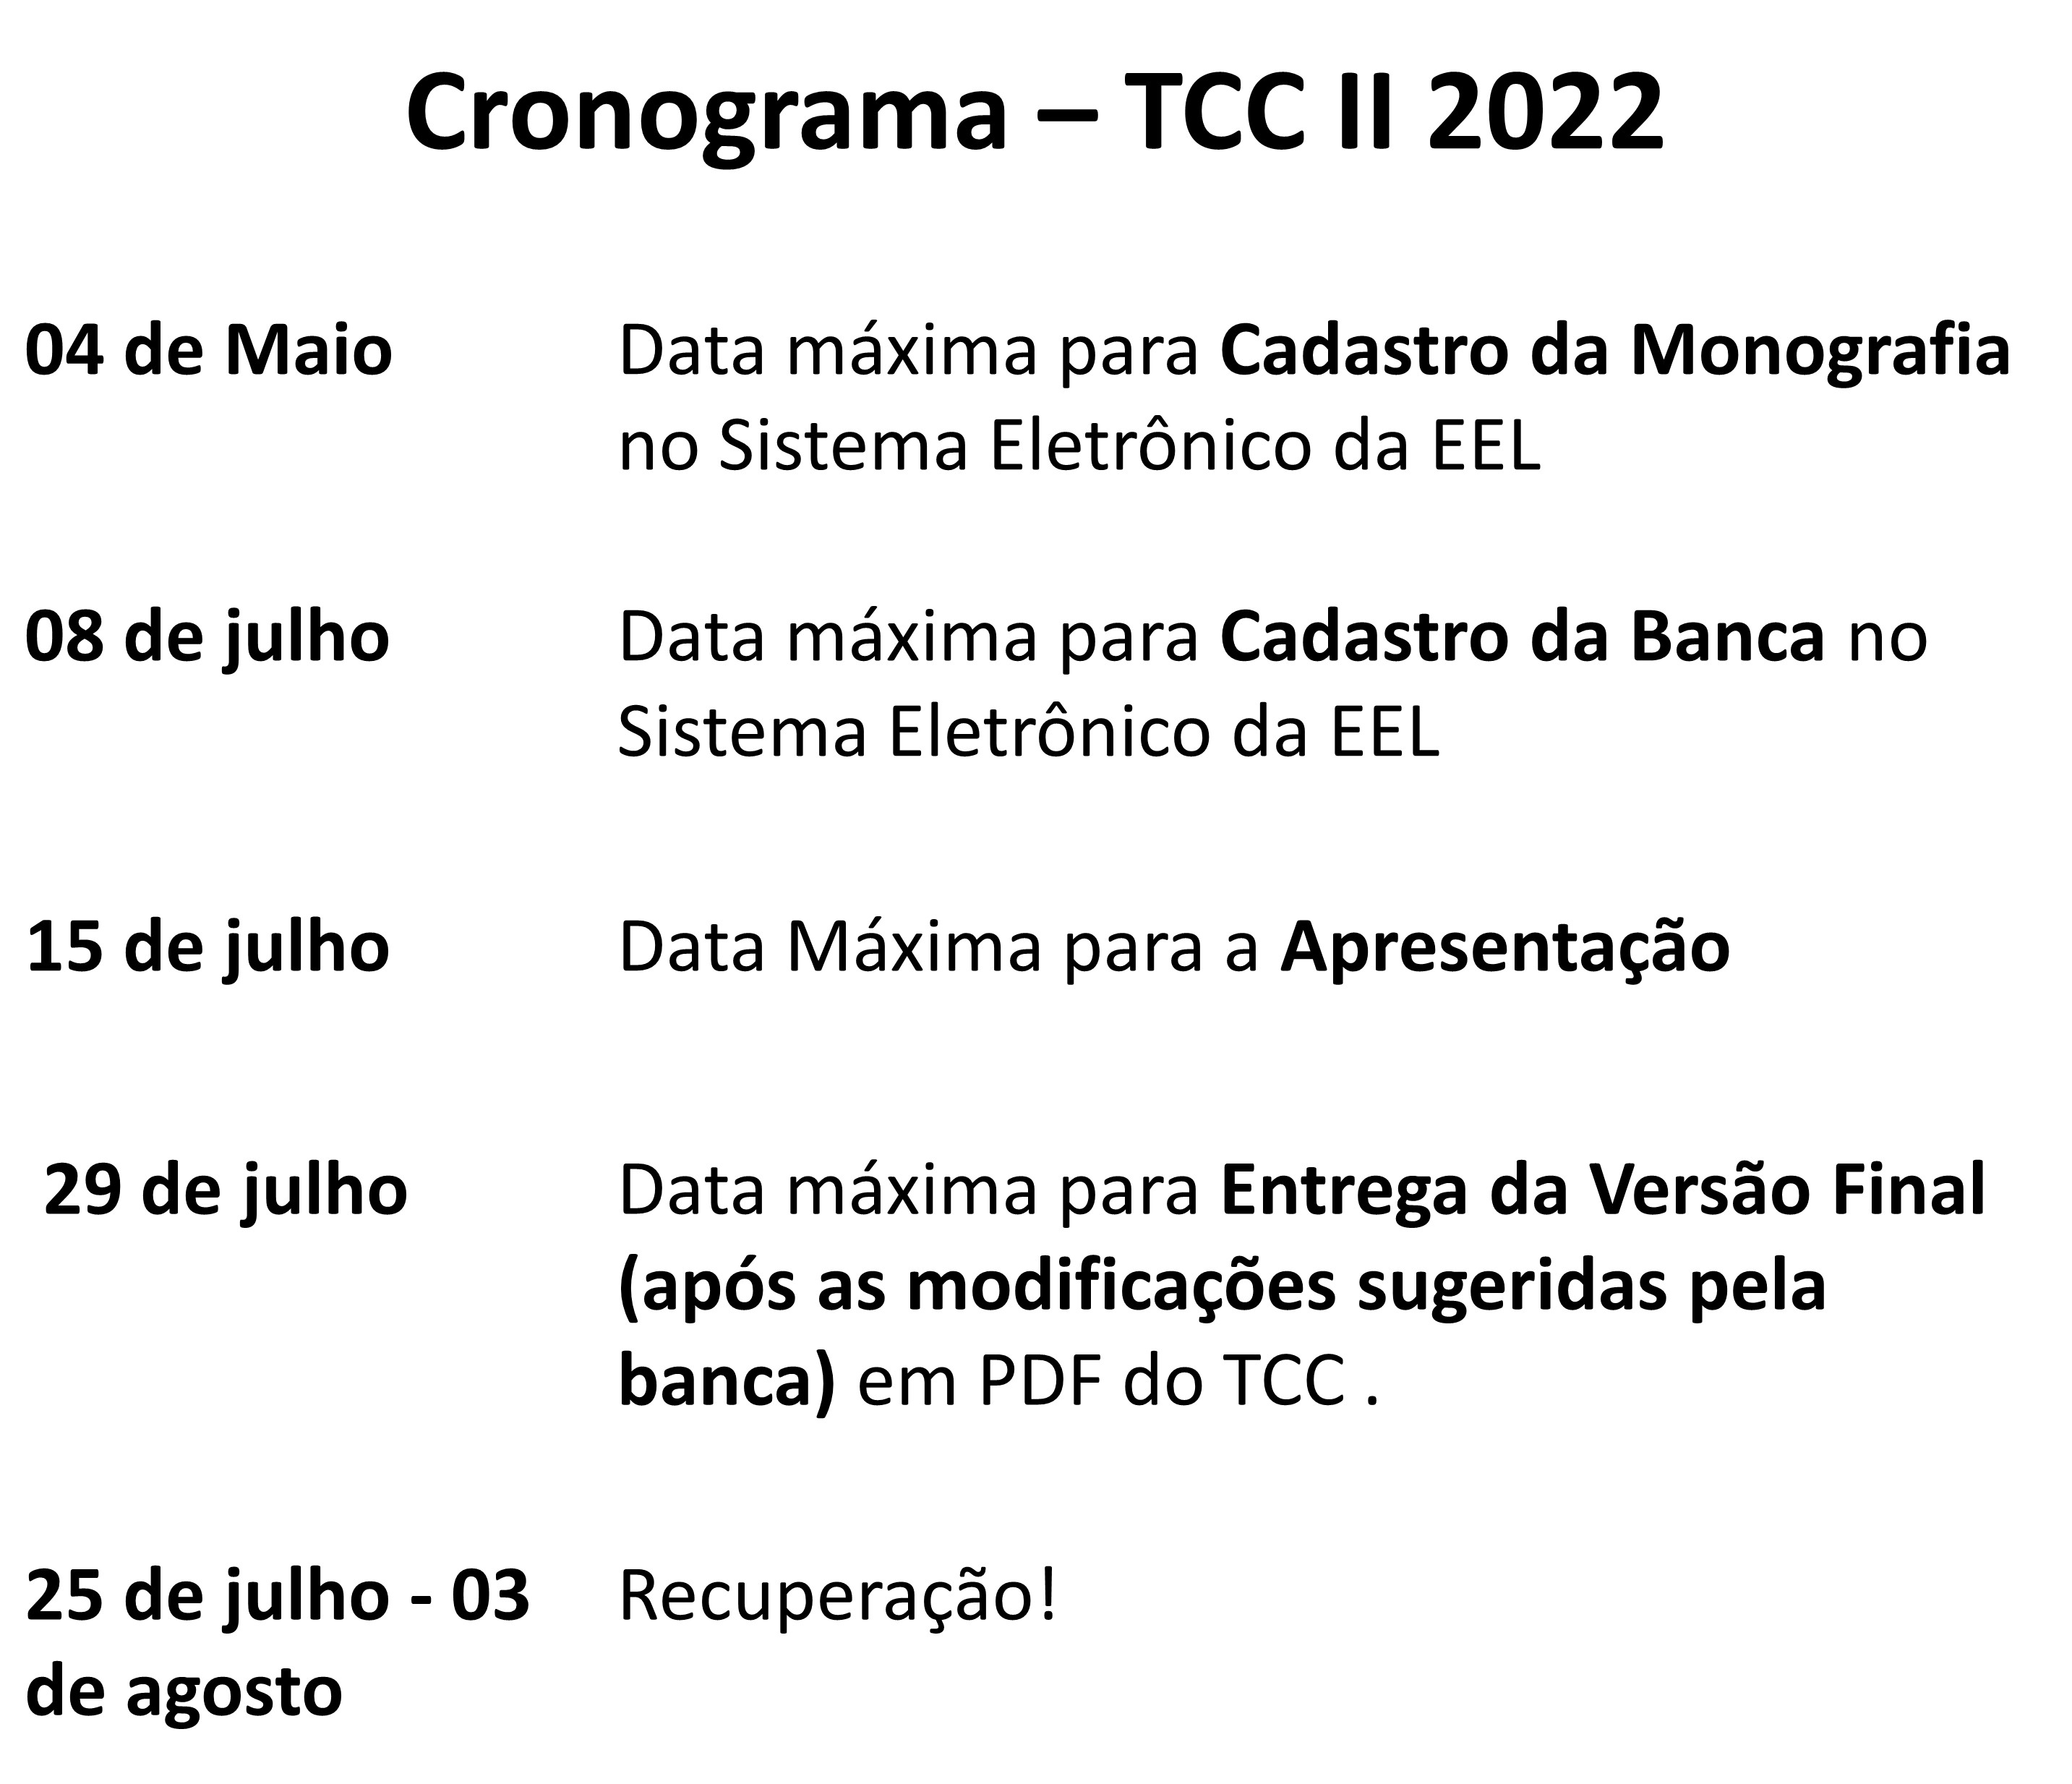 Calendário TCCII.jpg